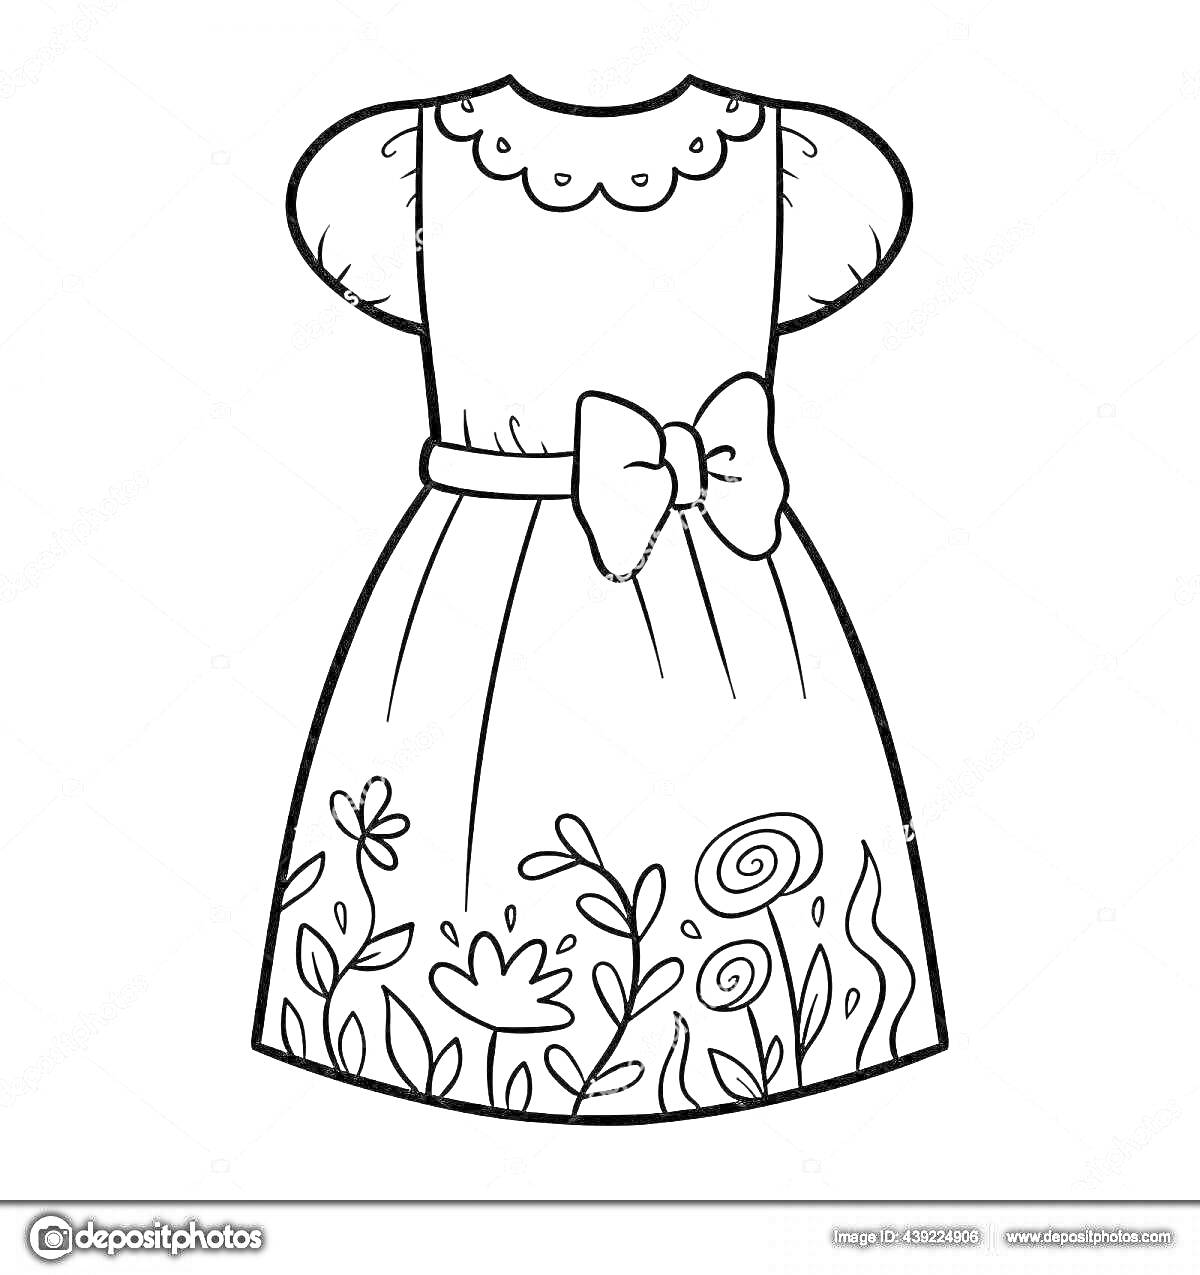 Раскраска Платье с бантом, кружевным воротничком и цветочным узором на подоле